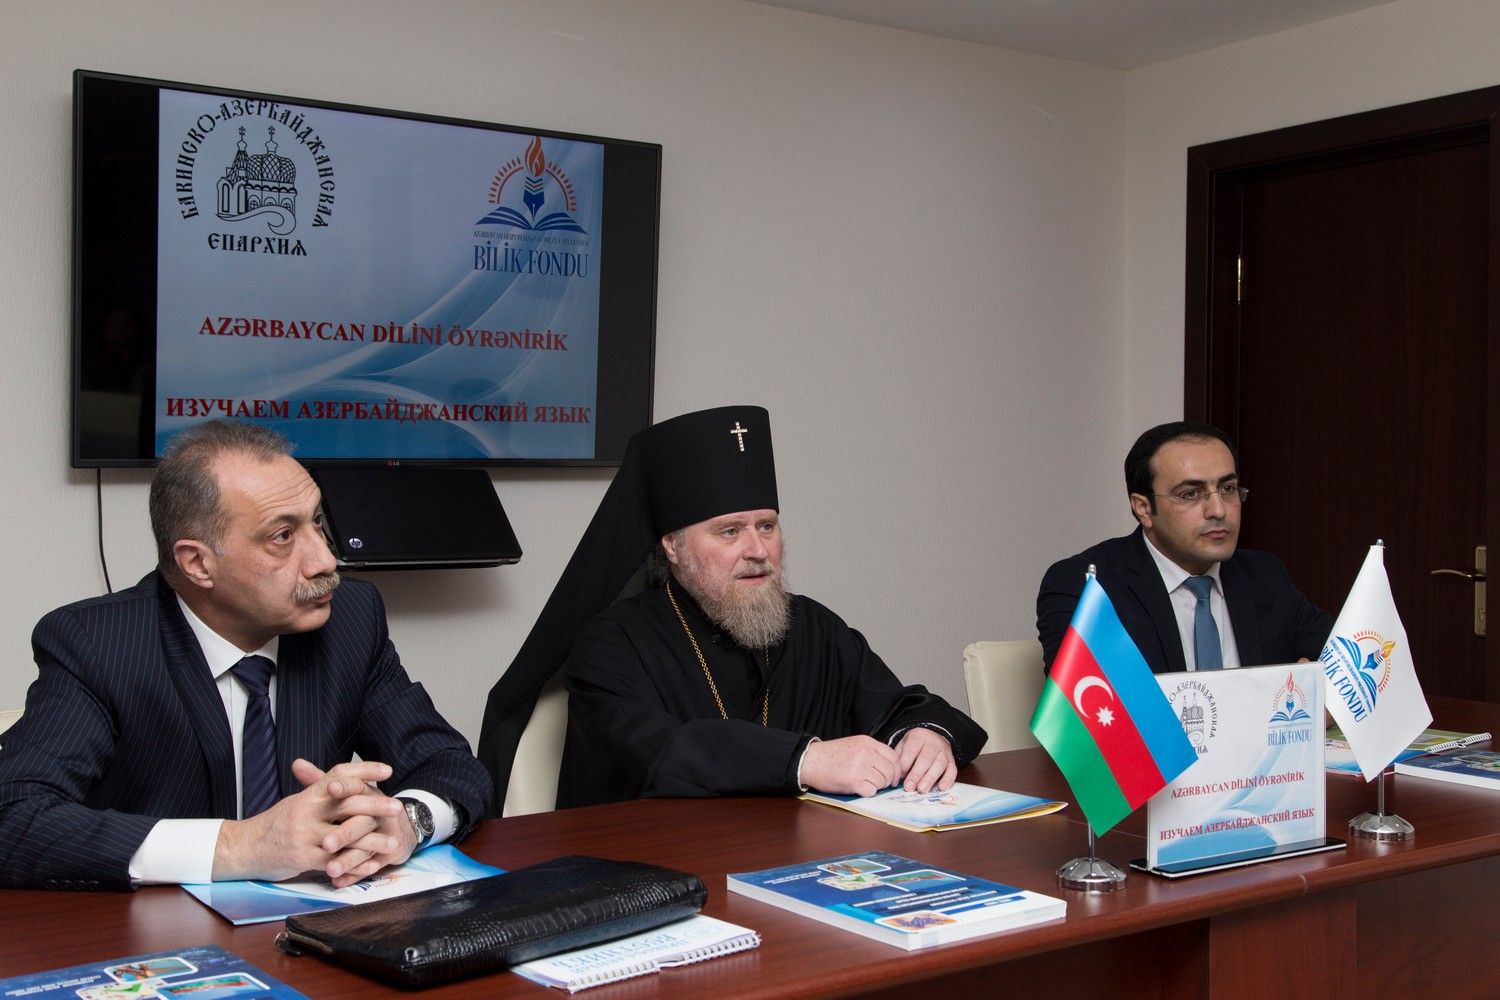 Высокопреосвященный архиепископ Александр принял участие в открытии курсов азербайджанского языка для русскоязычных граждан Азербайджана.